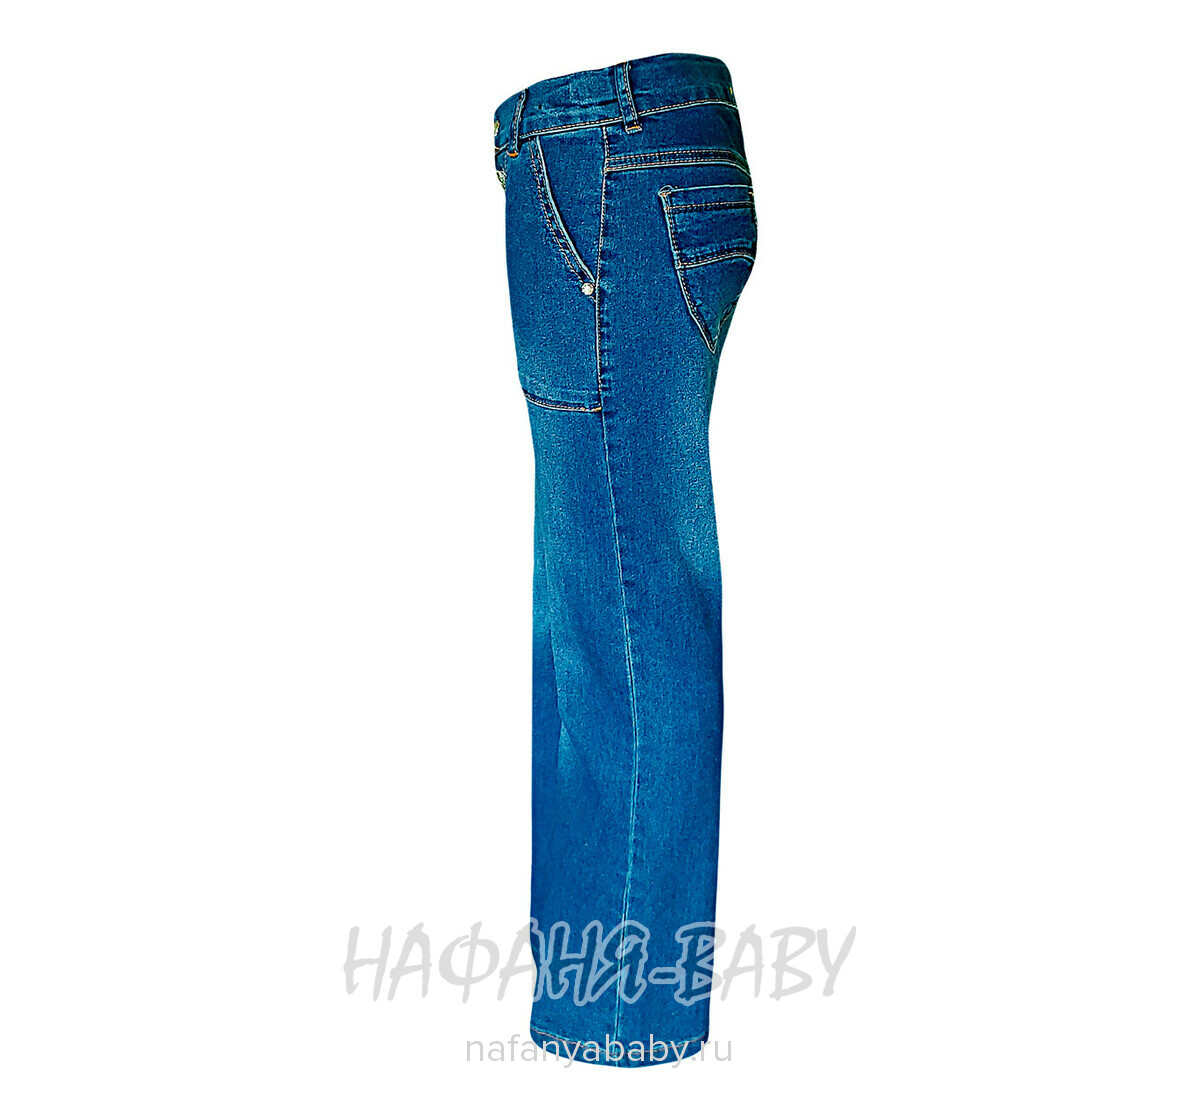 Джинсы подростковые TATI Jeans арт: 8925, 8-12 лет, цвет синий, оптом Турция